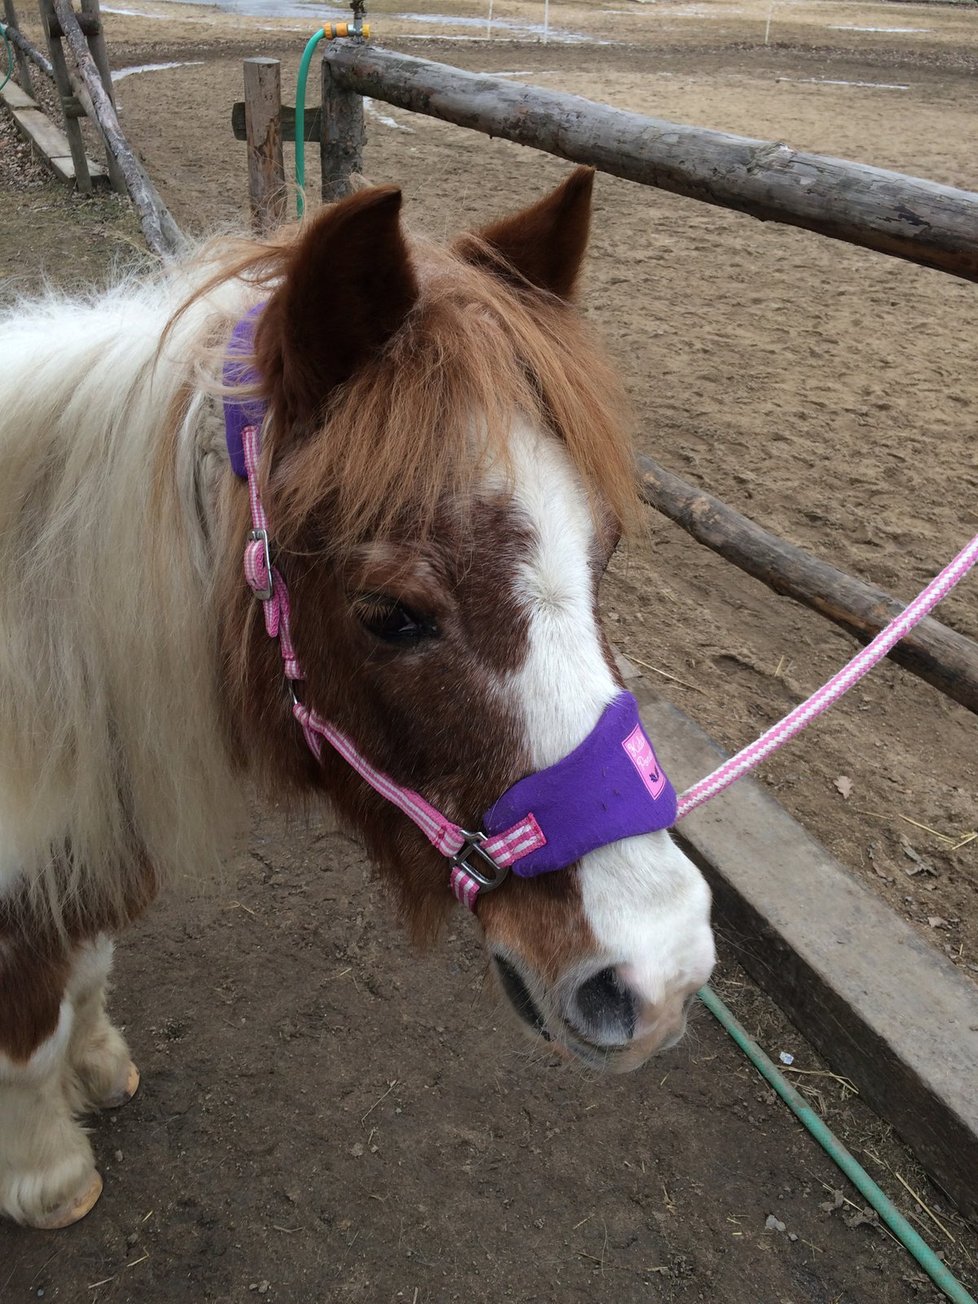 Pony školu založila Monika před 9 lety. Skloubila své dvě lásky – koně a děti.